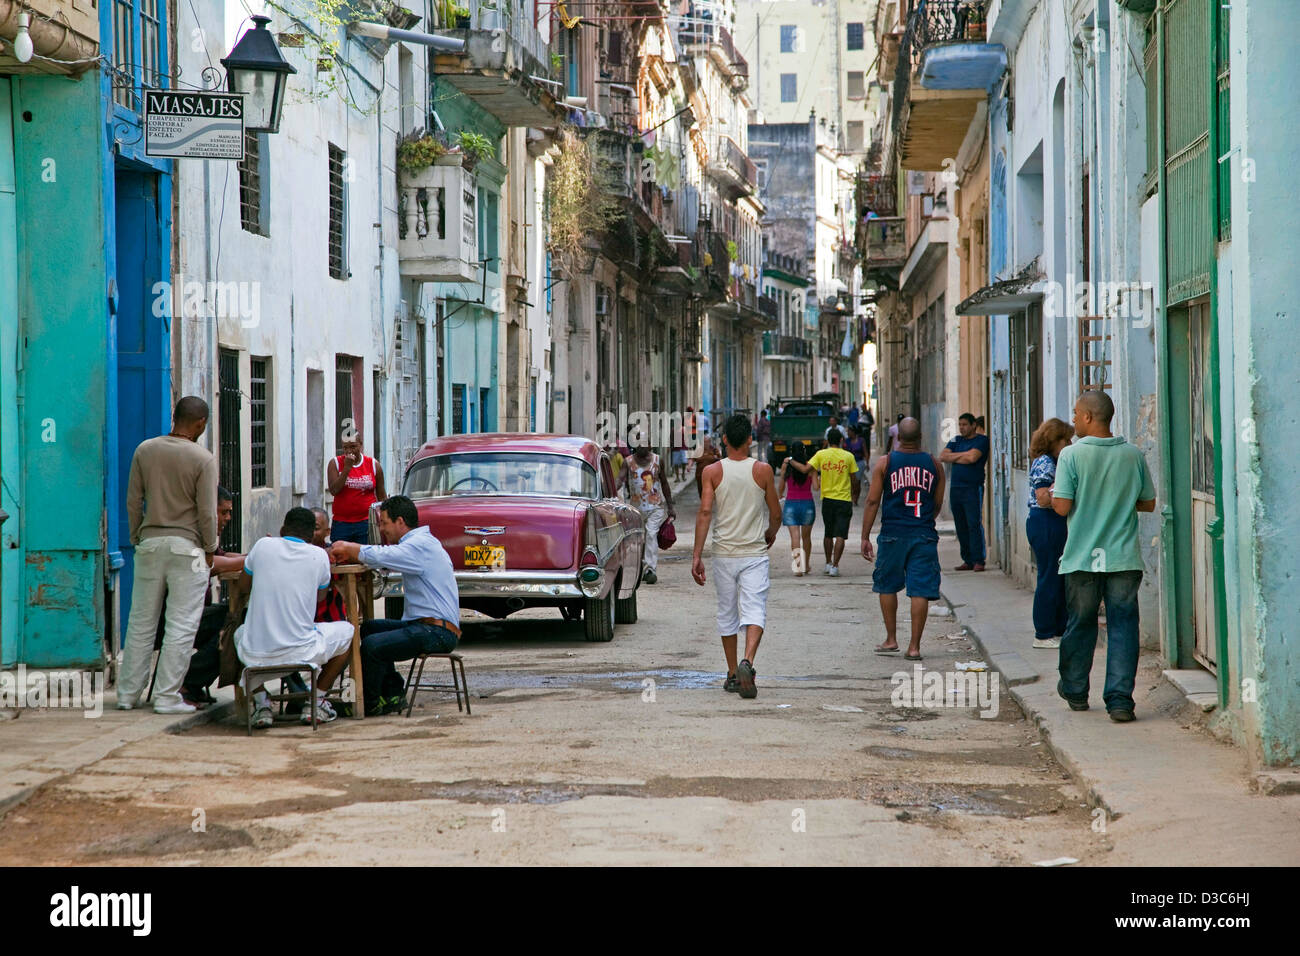 Strada trafficata scena e vecchio rosso degli anni cinquanta vintage americano auto / Yank serbatoio in Avana Vecchia / La Habana Vieja, Cuba, Caraibi Foto Stock